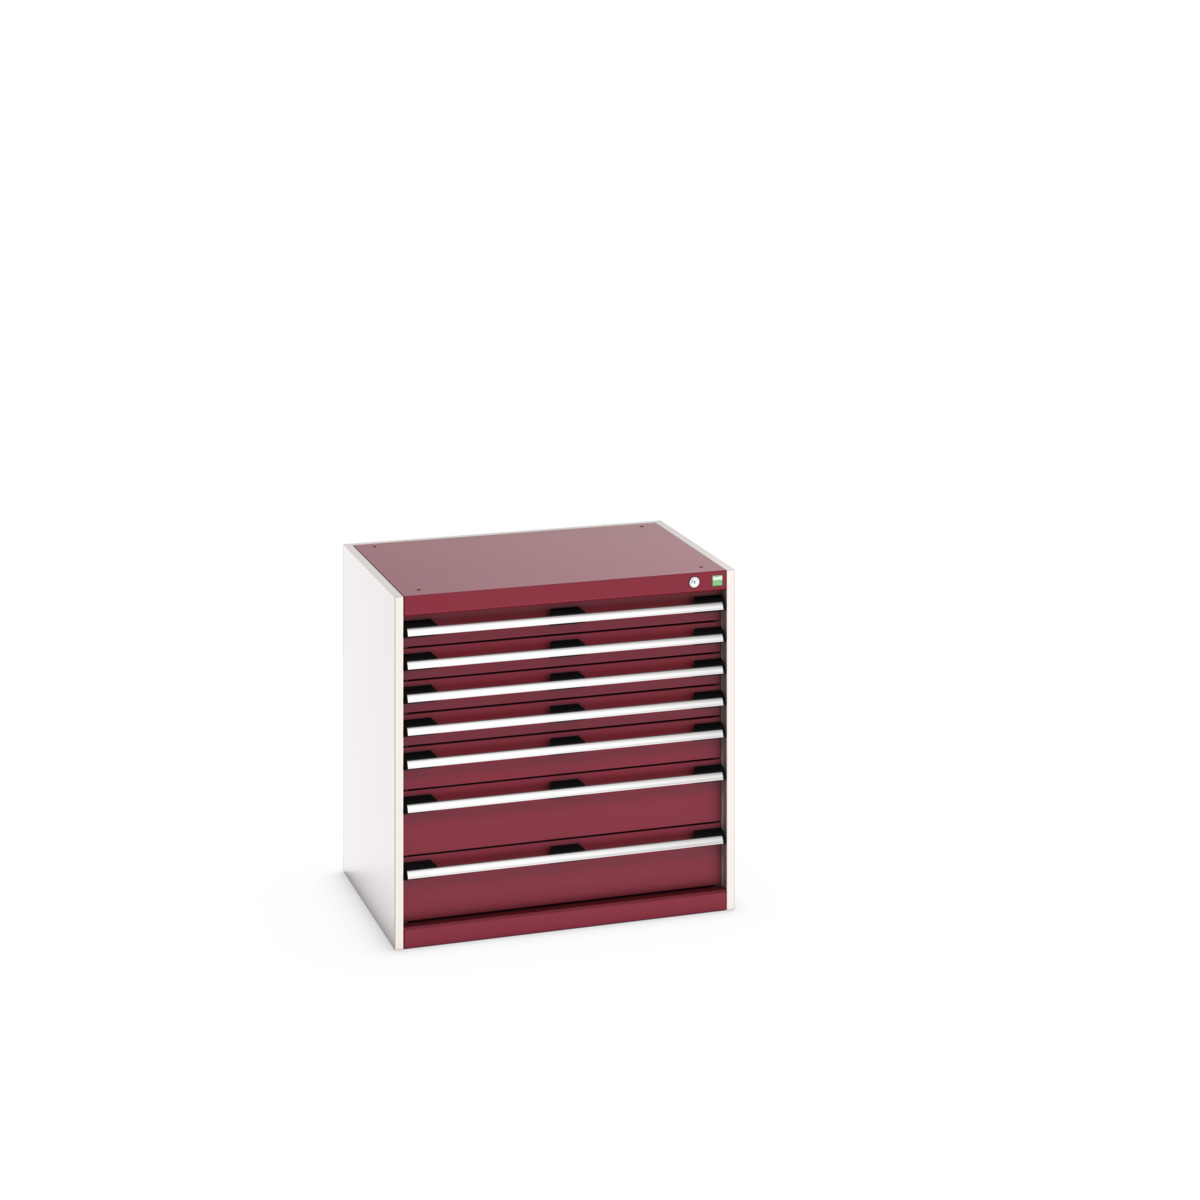 40020137.24V - cubio drawer cabinet